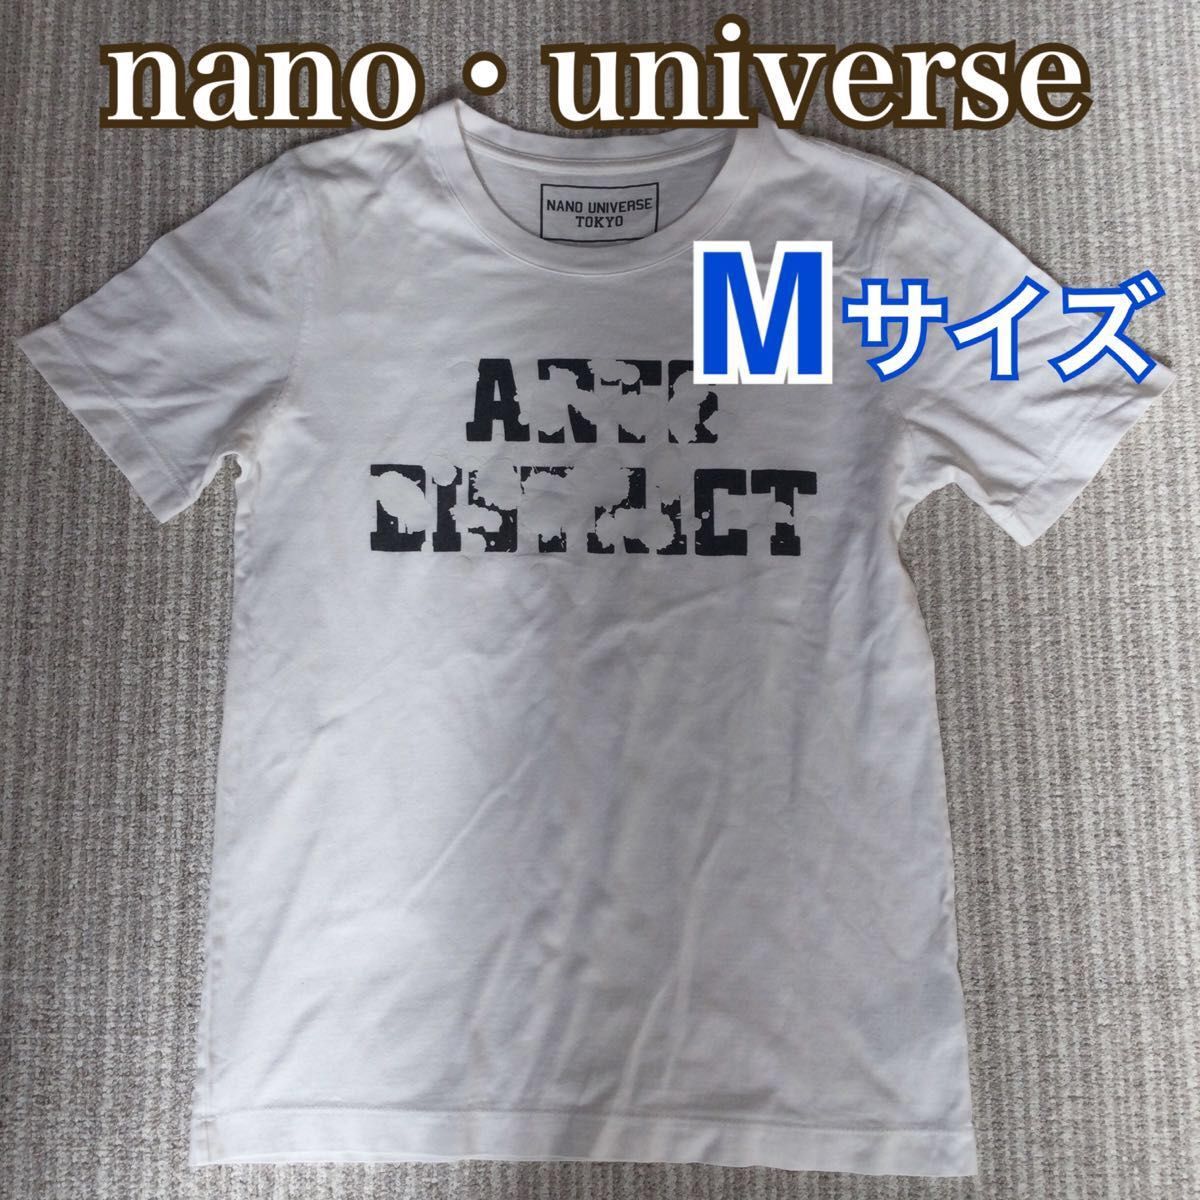 【ナノユニバース】半袖 白色 Tシャツ メンズ Mサイズ nano universe 白T